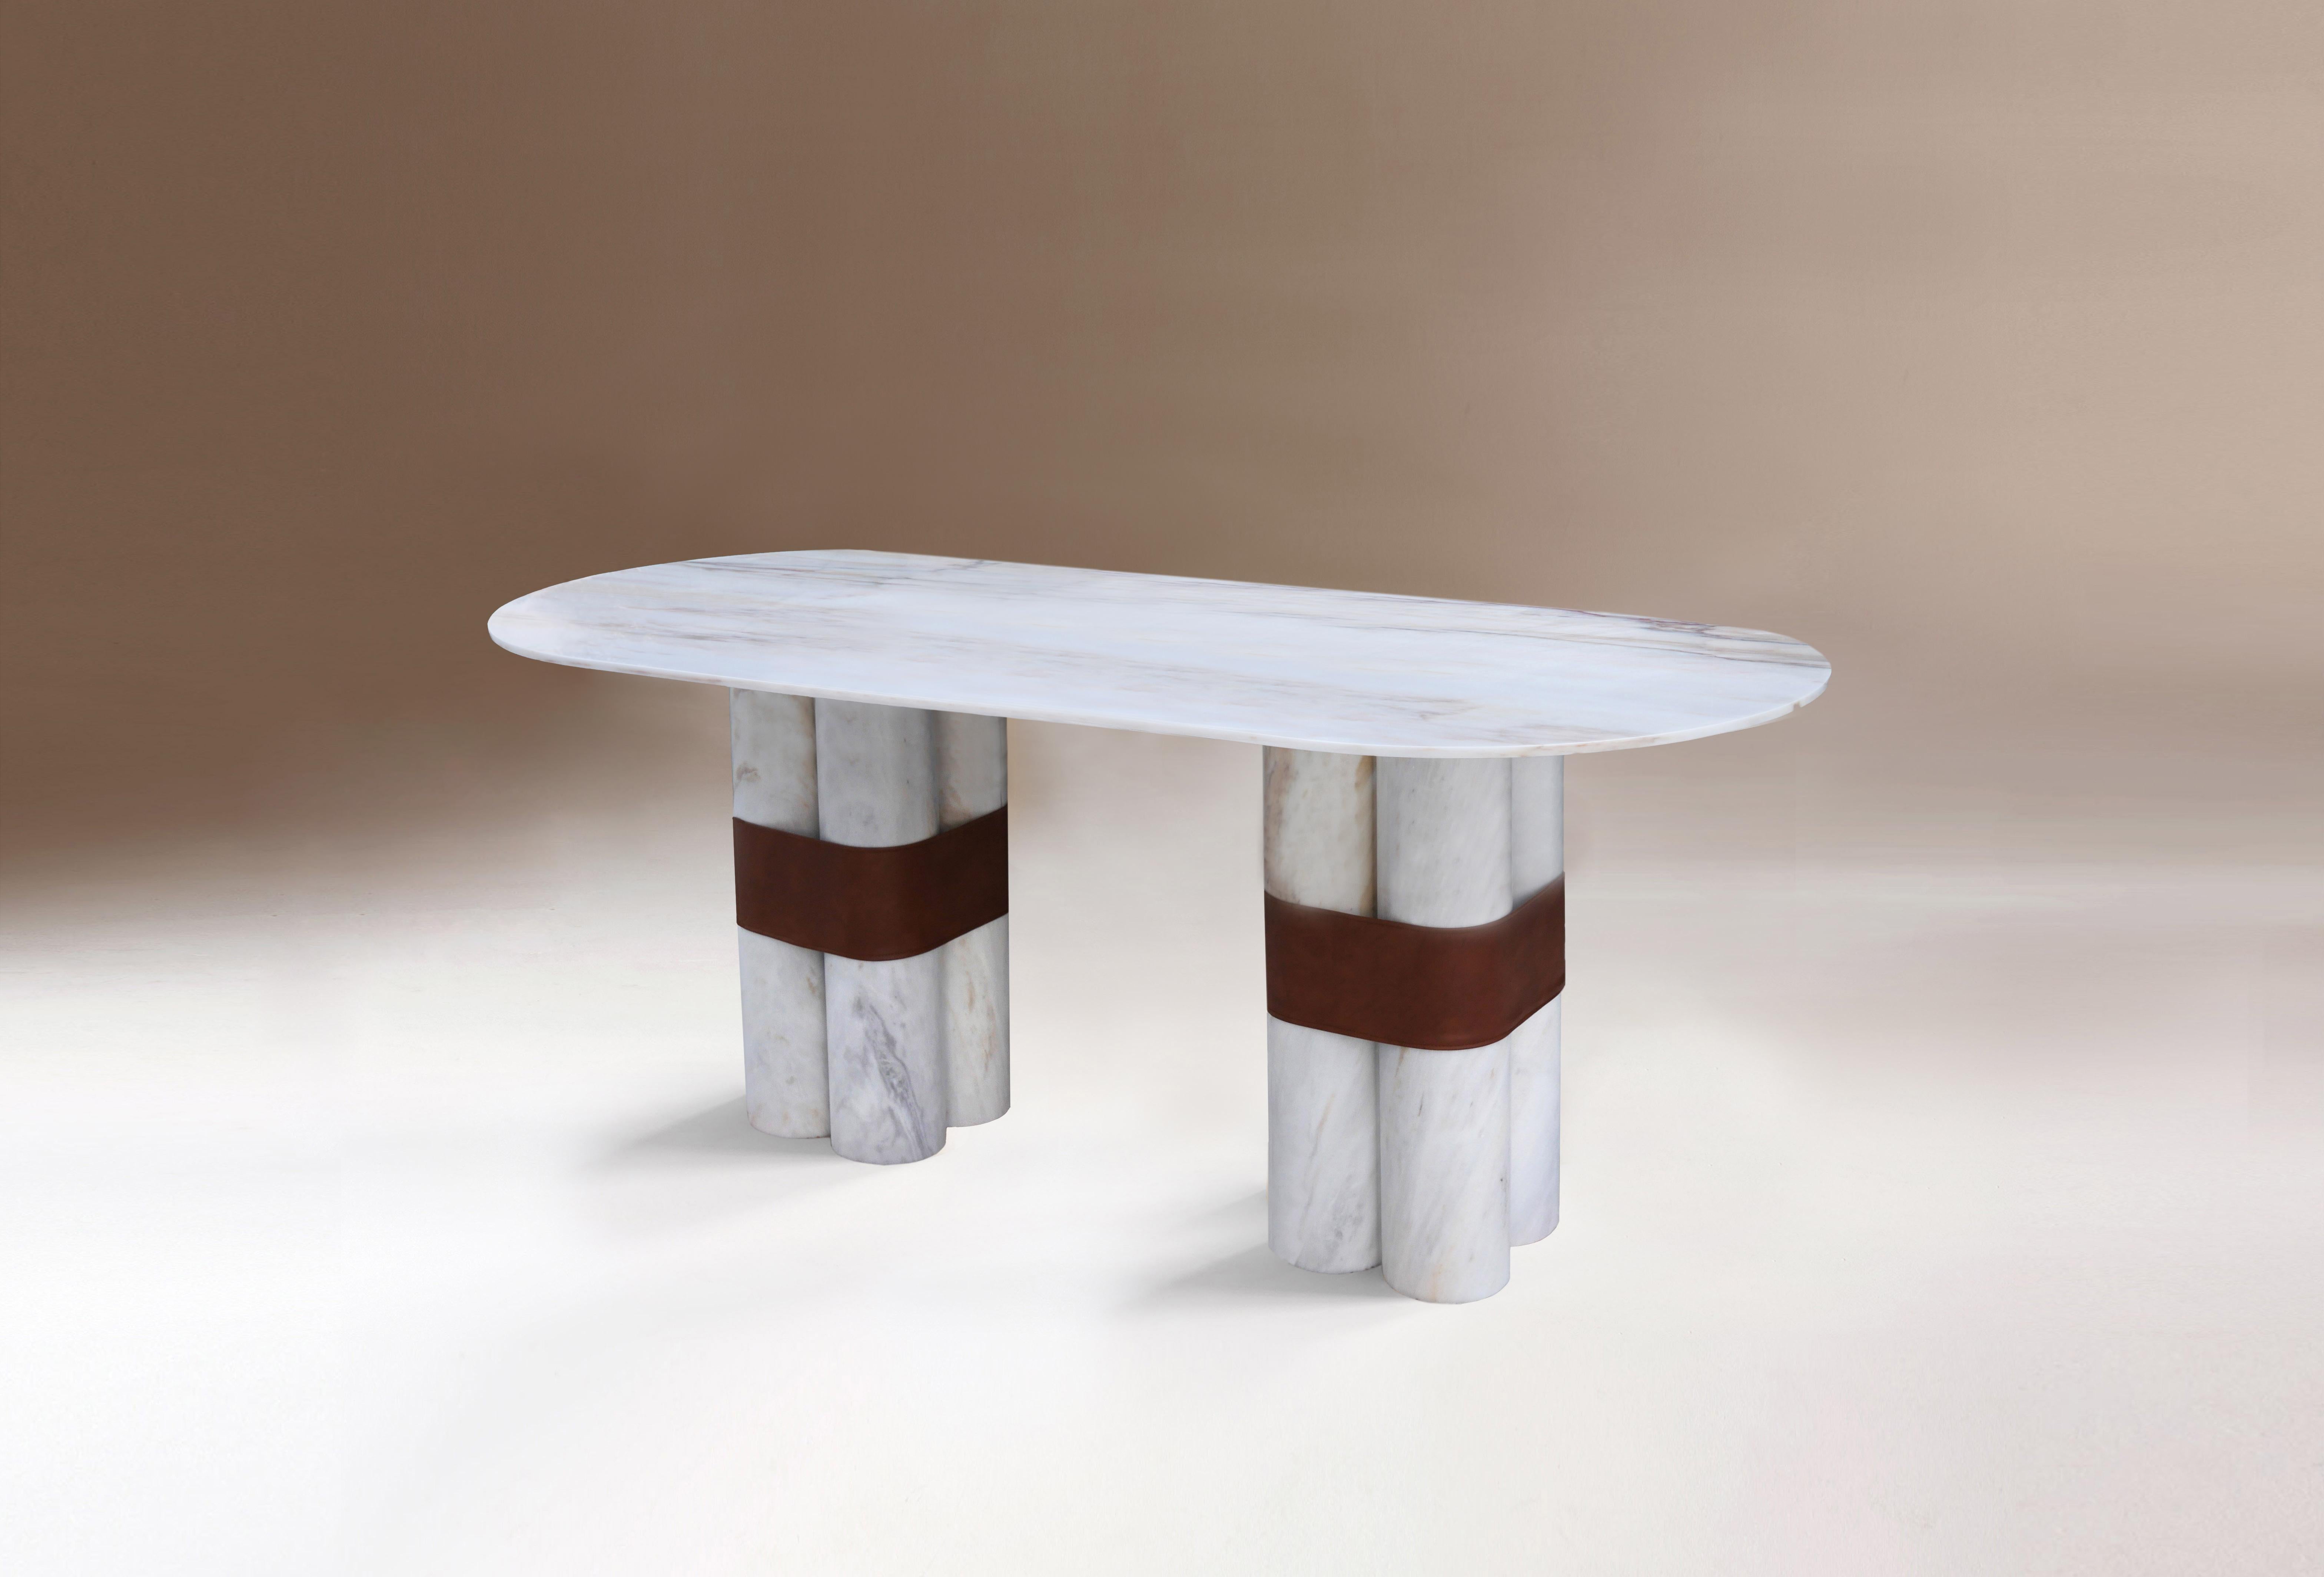 Axis oval table by Dovain Studio
Dimensions: H 79 x Ø 200 cm.
Materials: Estremoz white marble, eco leather.

Dovain Studio
Creative direction by Sergio Prieto, a Spanish artist-designer who was born in Talavera de la Reina in 1994. He